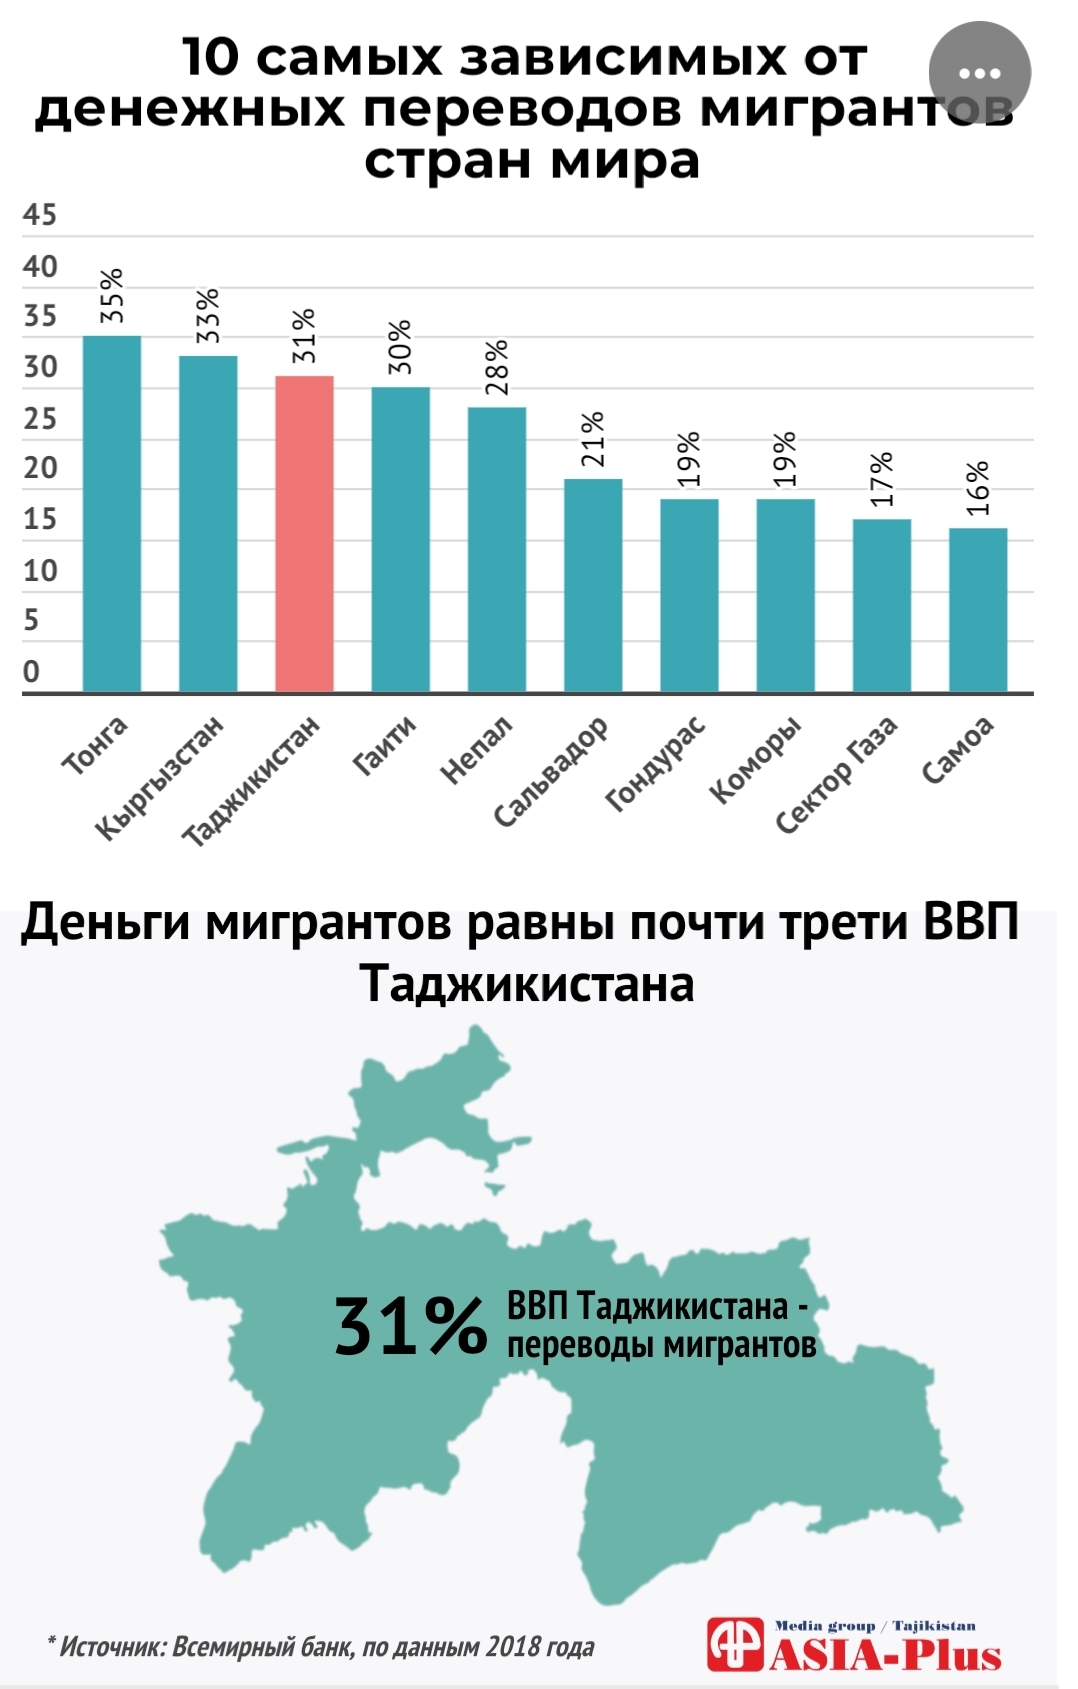 Сколько русских проживает в таджикистане. ВВП Таджикистана 2020. Переводы мигрантов. Миграция Таджикистан 2020. Денежных переводов мигрантов в Таджикистан.